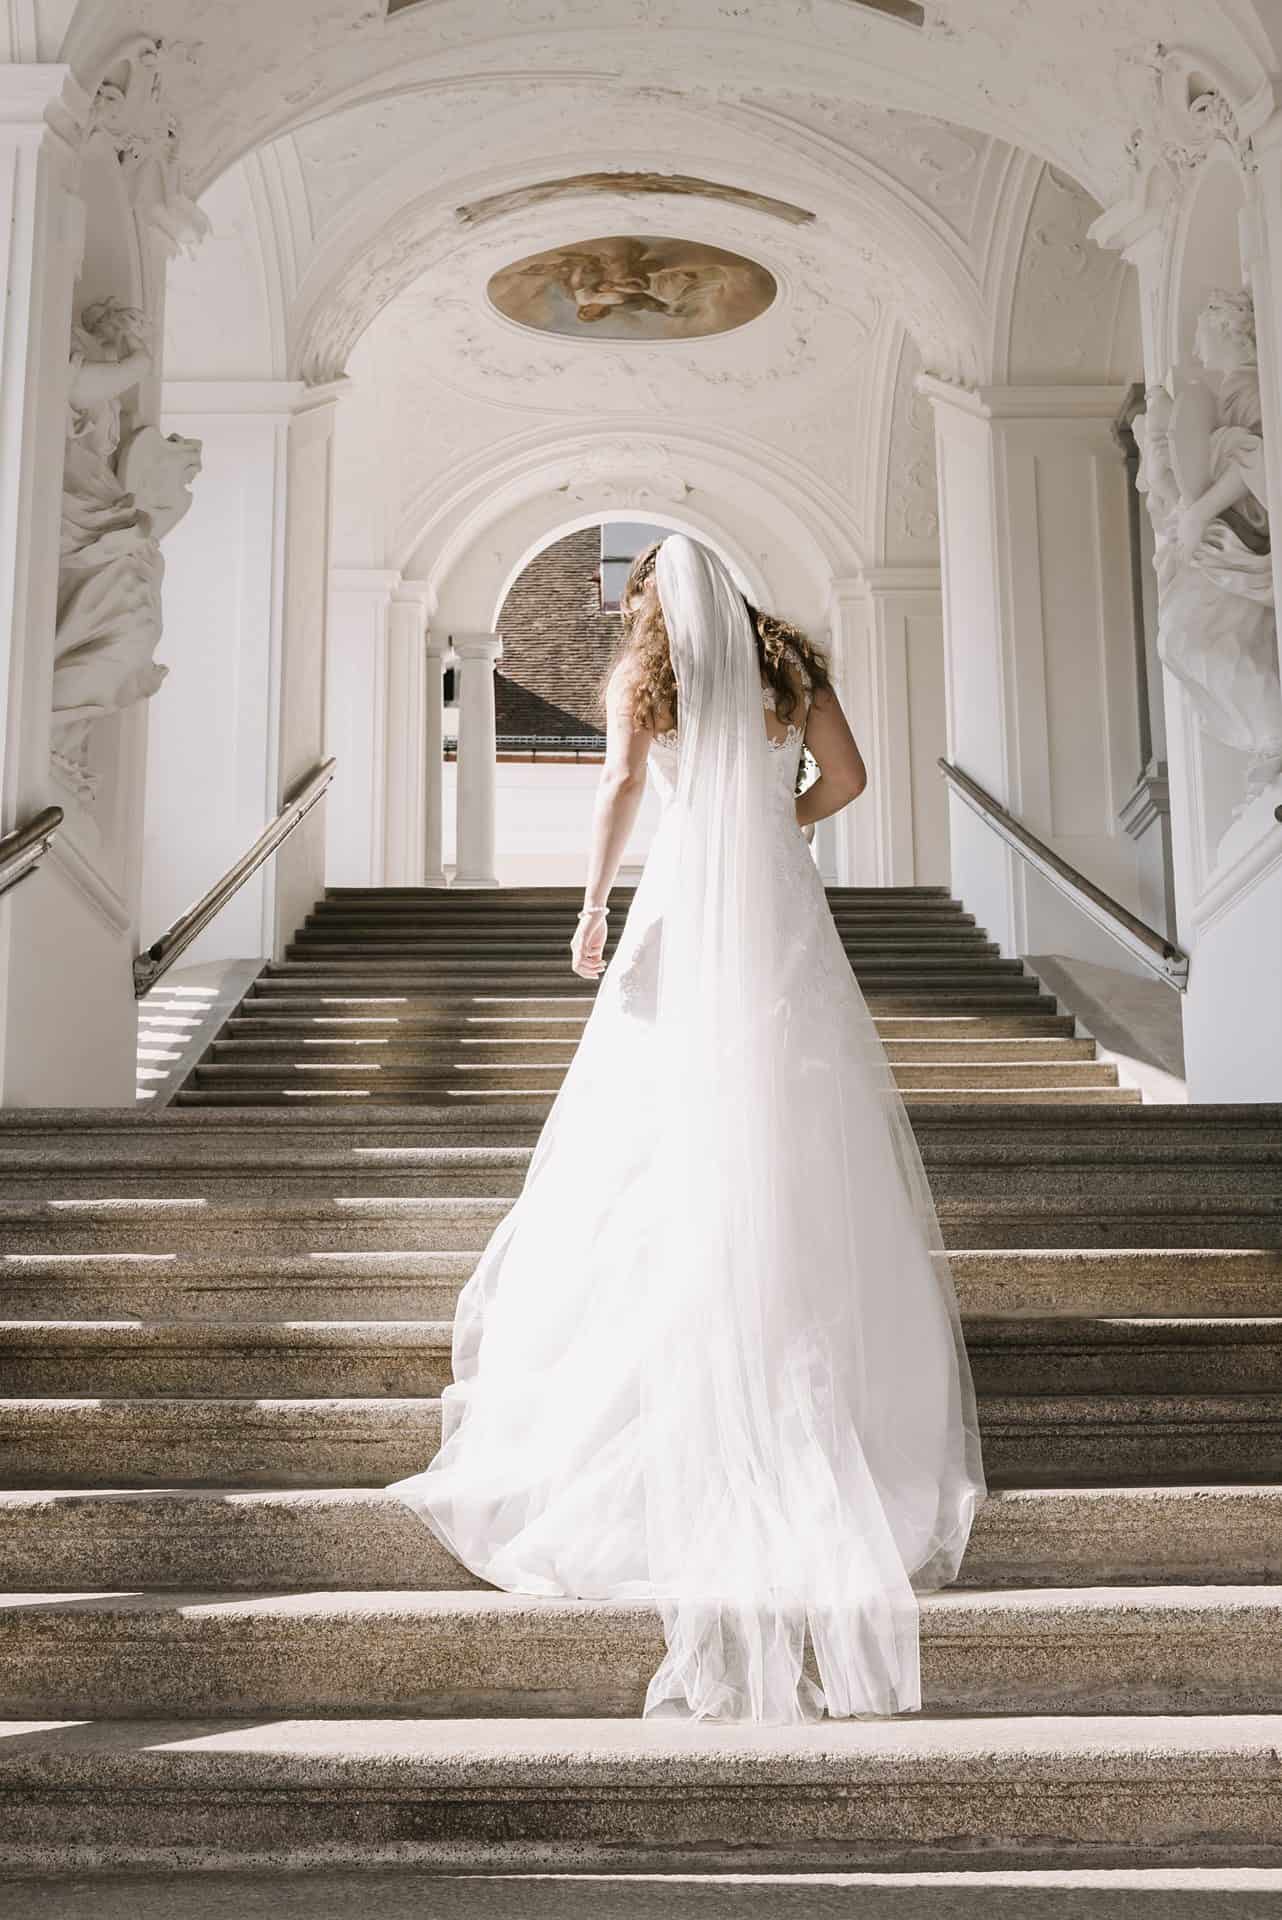 Eine Braut geht die Treppe eines Gebäudes hinunter.